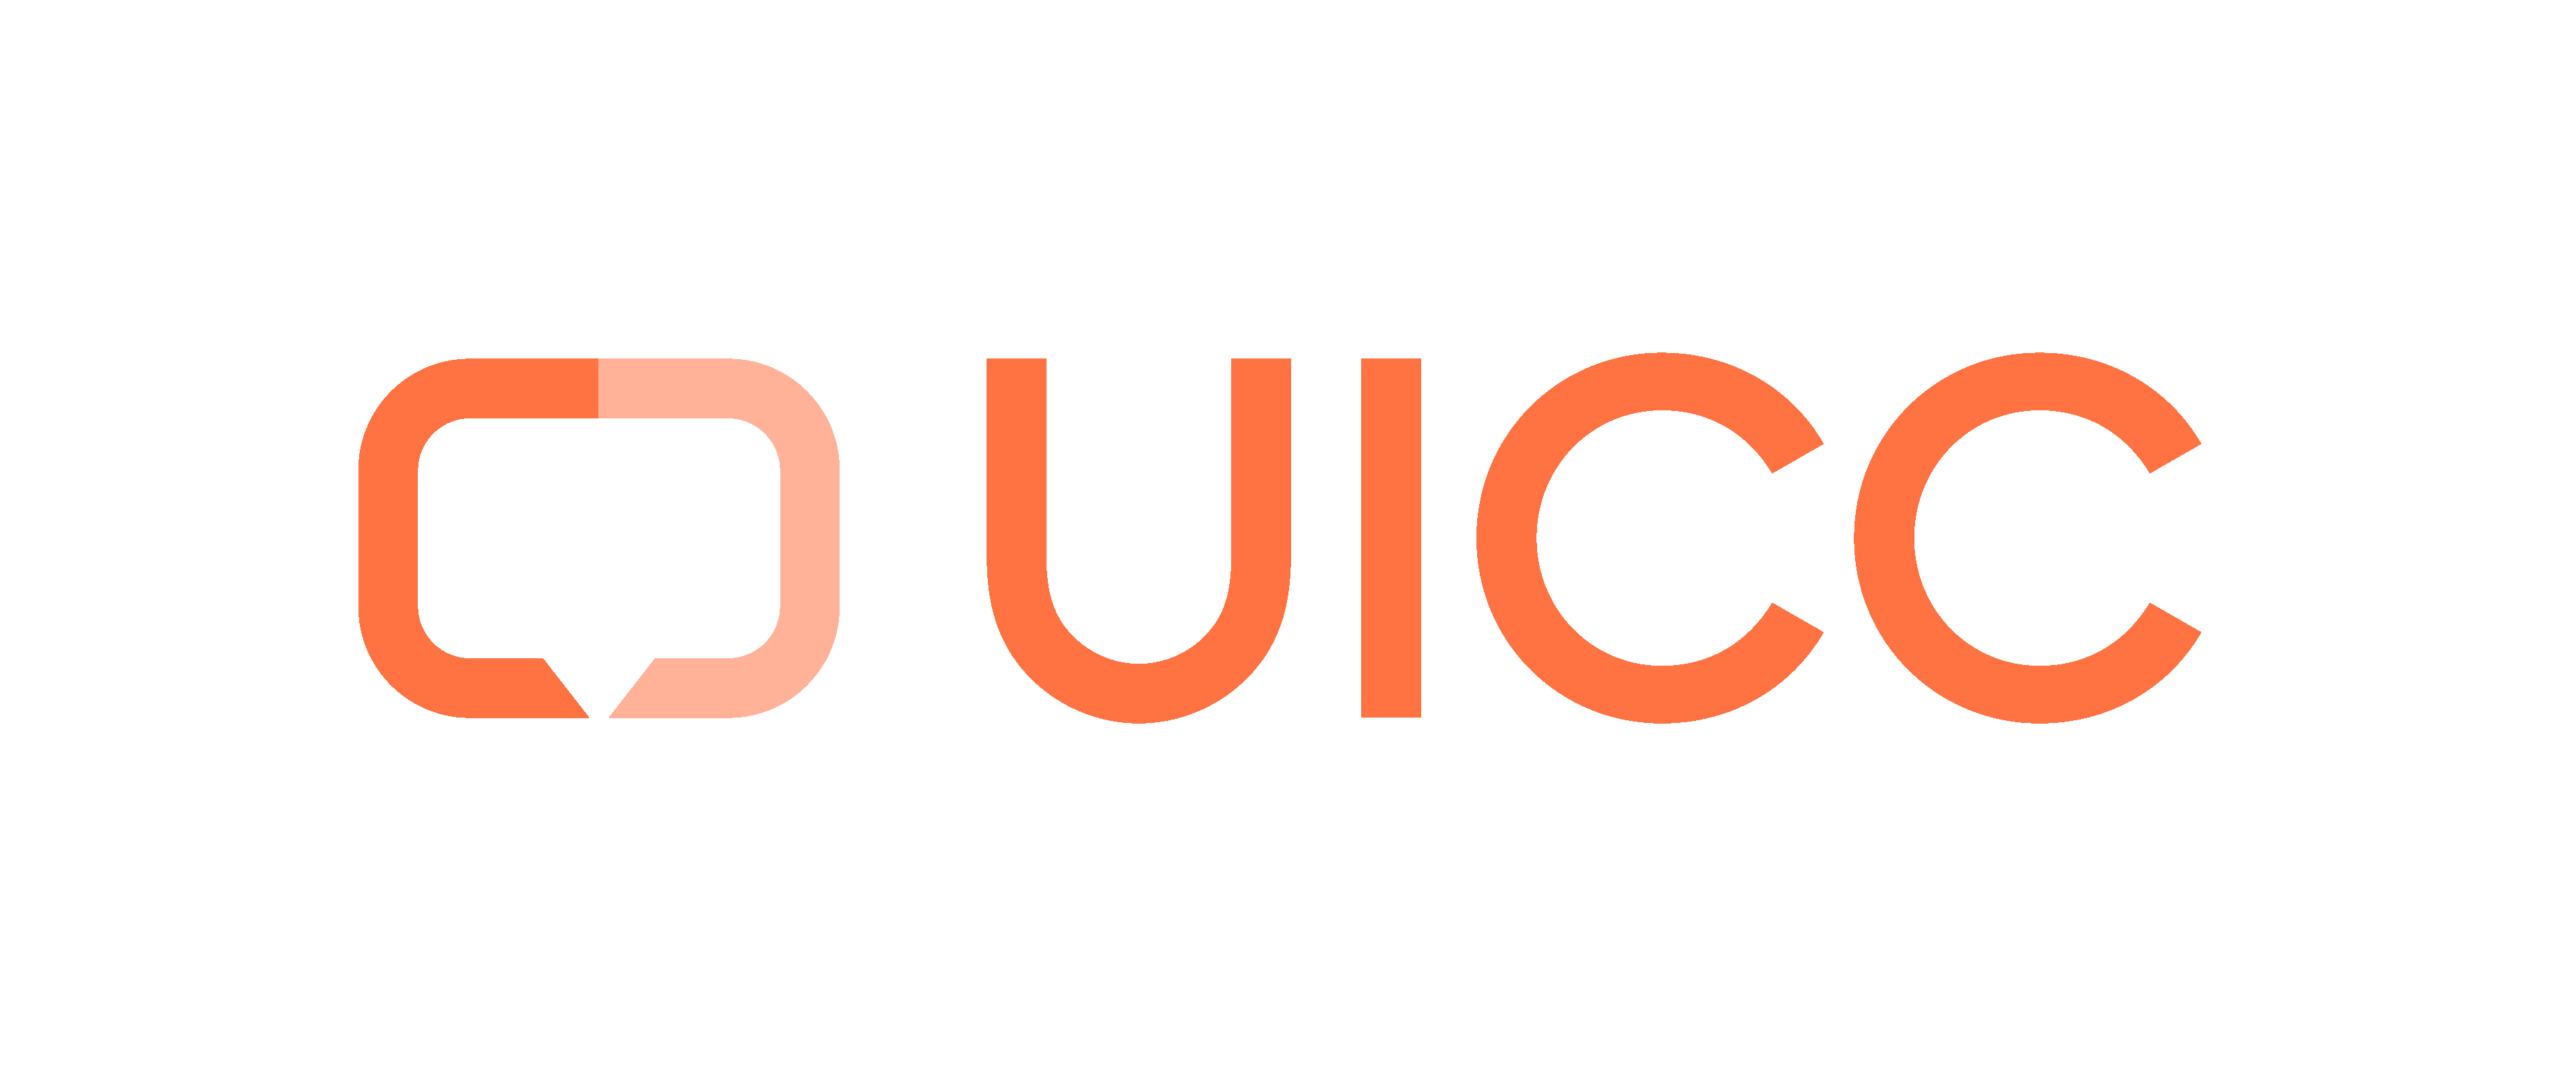 UICC Logo